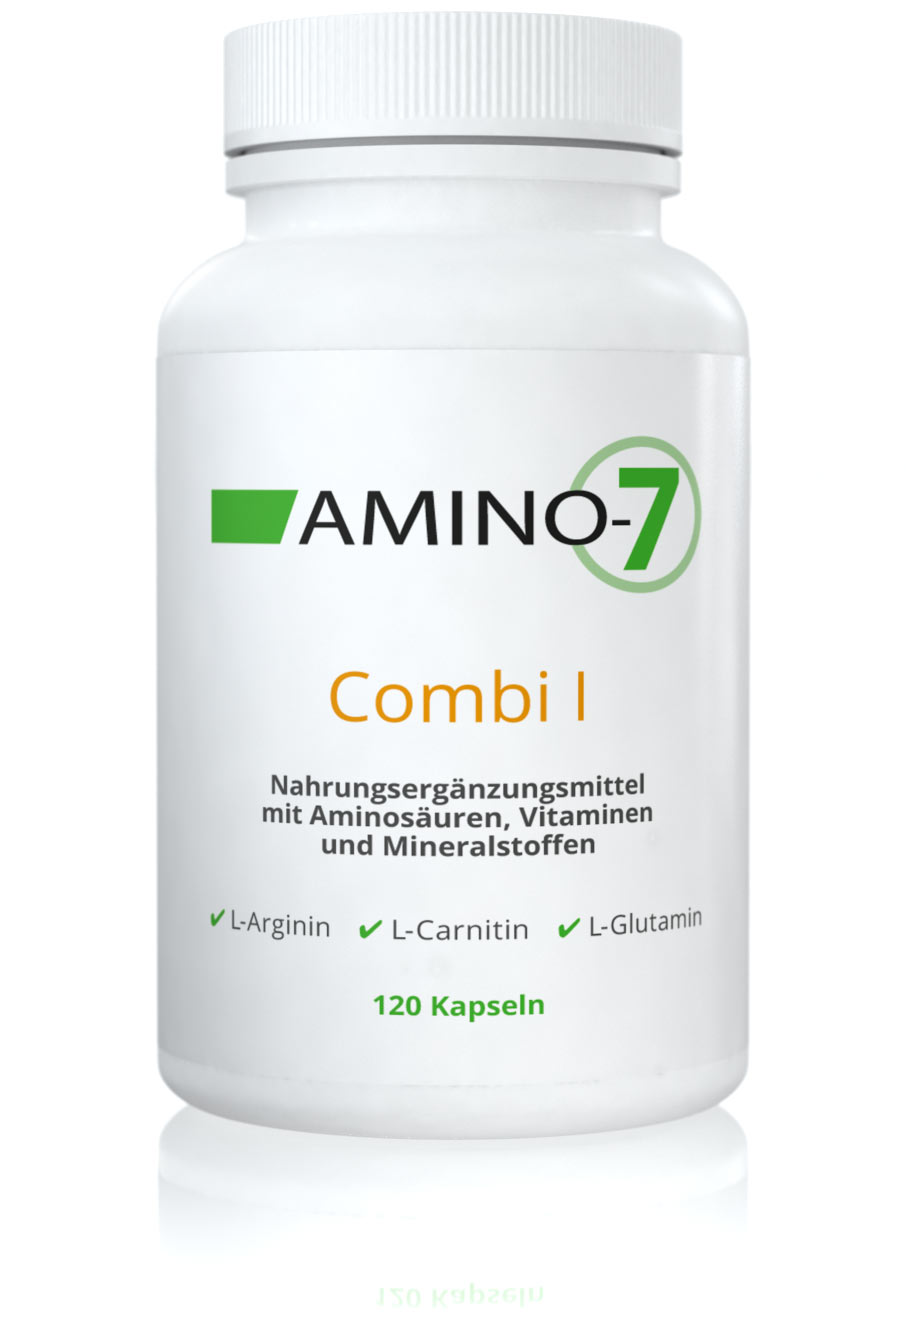 AMINO-7 Combi I